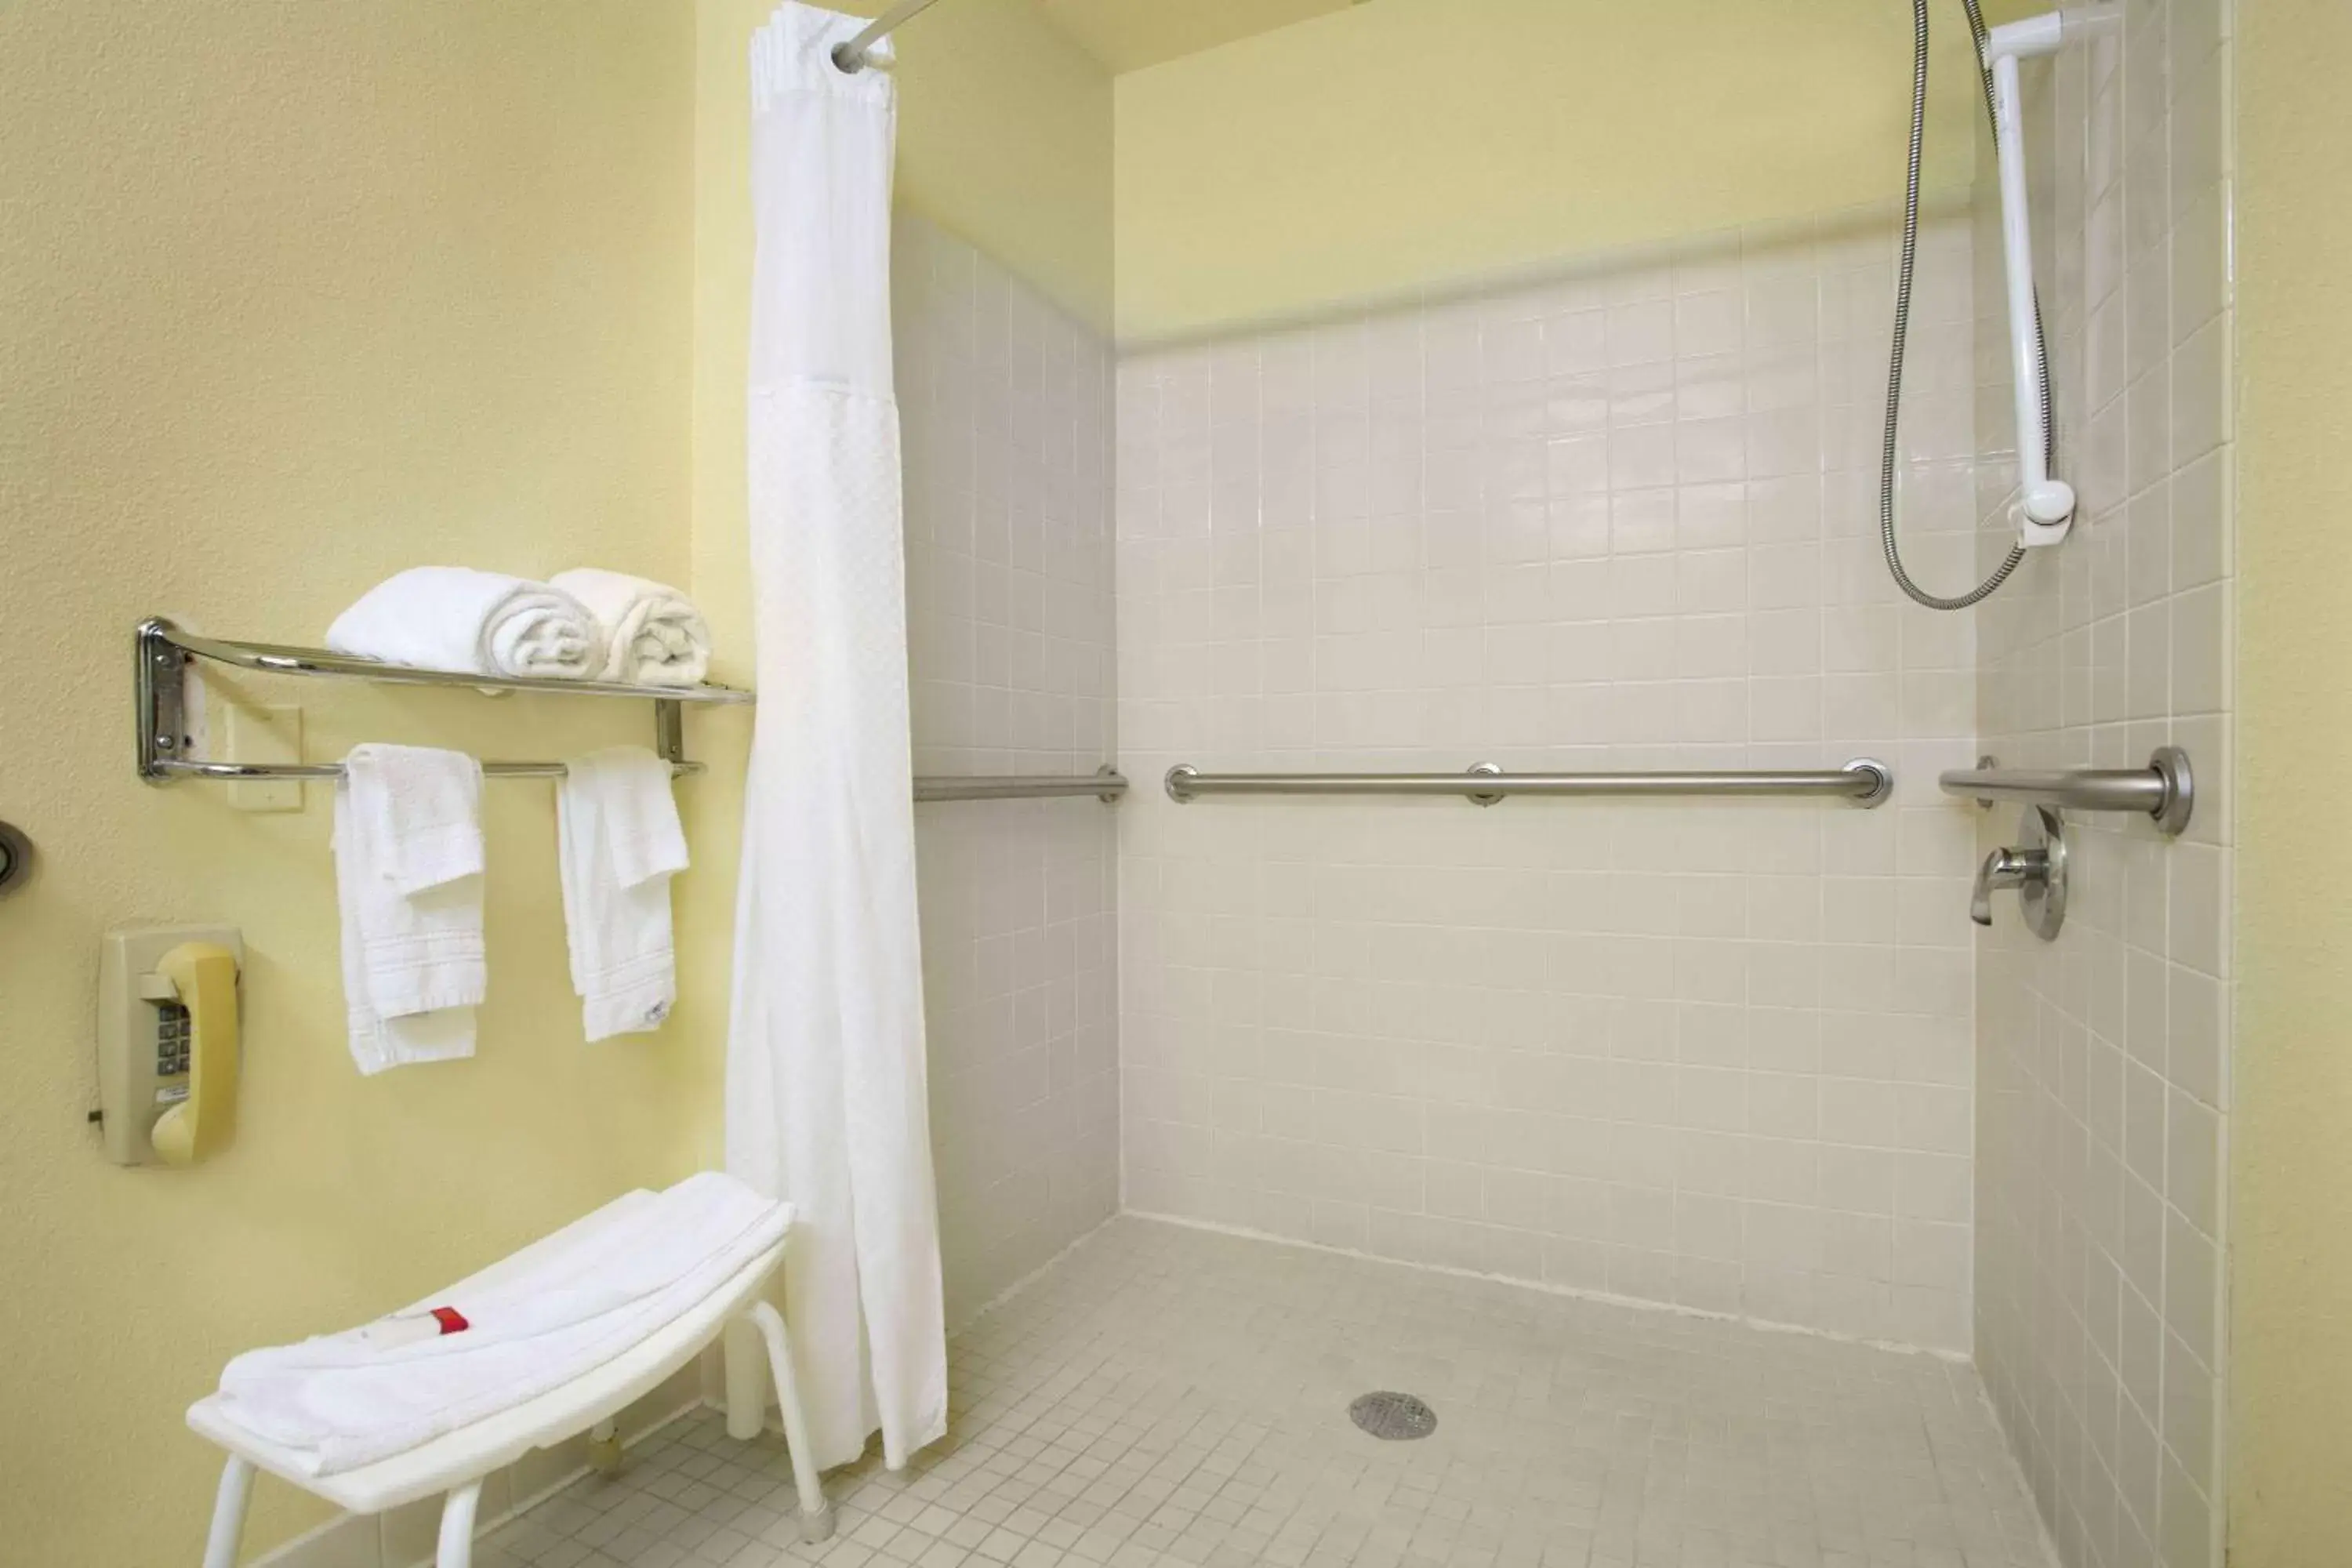 TV and multimedia, Bathroom in Super 8 by Wyndham Lynchburg VA